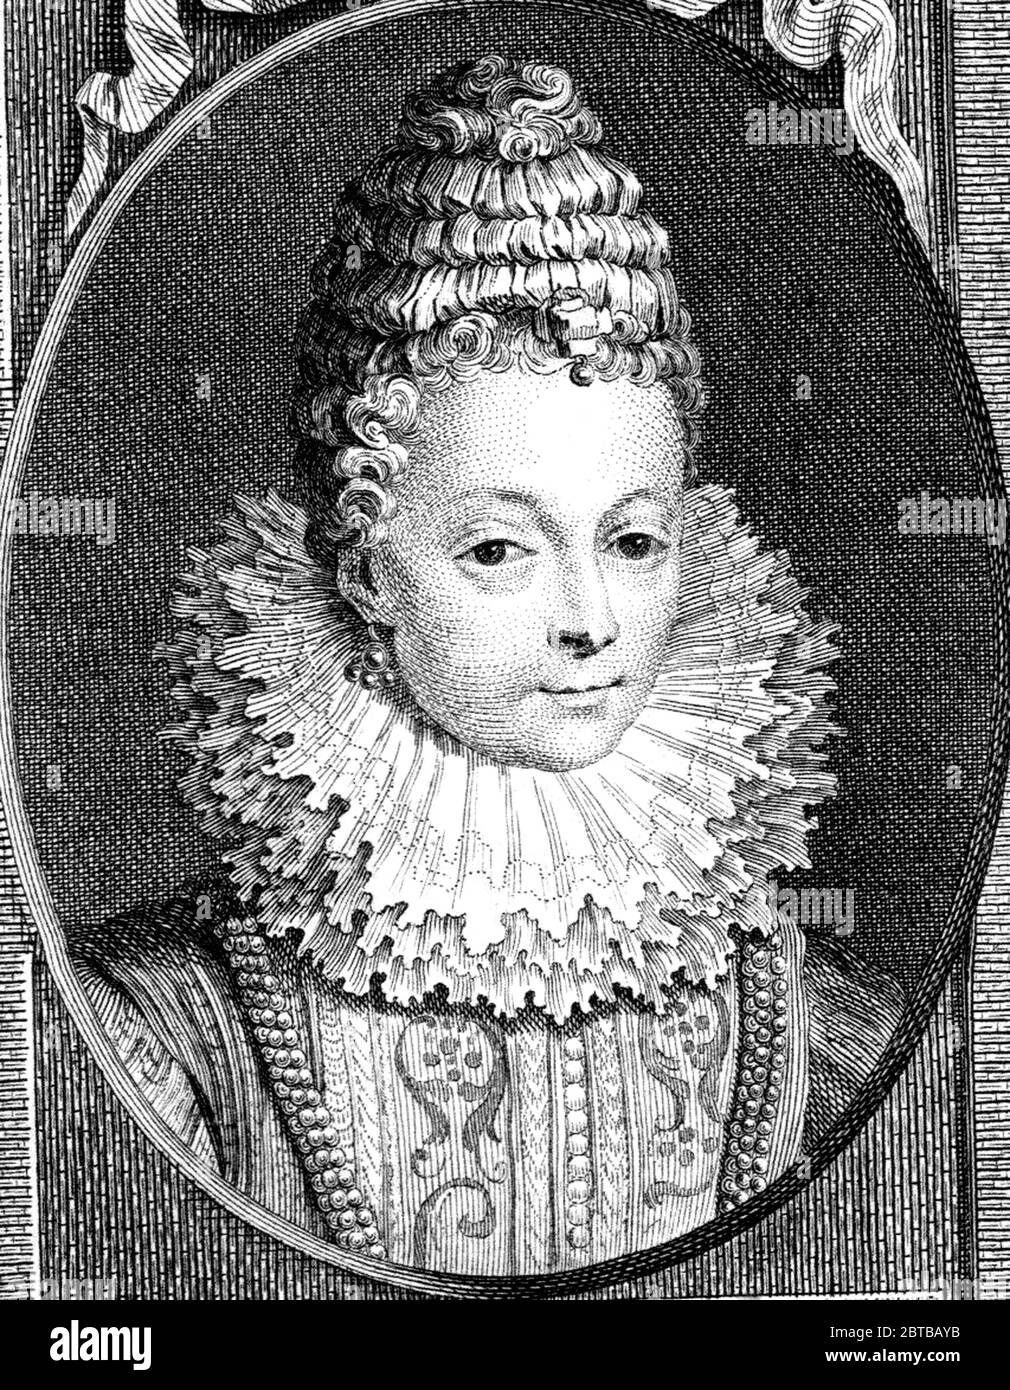 1600 c., FRANCIA: La regina francese MARIA DE MEDICI ( Marie , 1575 - 1642 ), moglie del re Enrico IV di Borbone madre del re Luigi XIII ( 1601 - 1643 ). Ritratto inciso da sconosciuti artis . - de' Medici - Médicis - NOBILITY - NOBILI francesi - Nobiltà francese - FRANCIA - illustrazione - illustrazione - incisione - incisione - Regina di Francia - colletto - colletto - ricci - pizzo - collana perle - collana di perle - Perla - orecchini - orecchini - gorgiera --- ARCHIVIO GBB Foto Stock